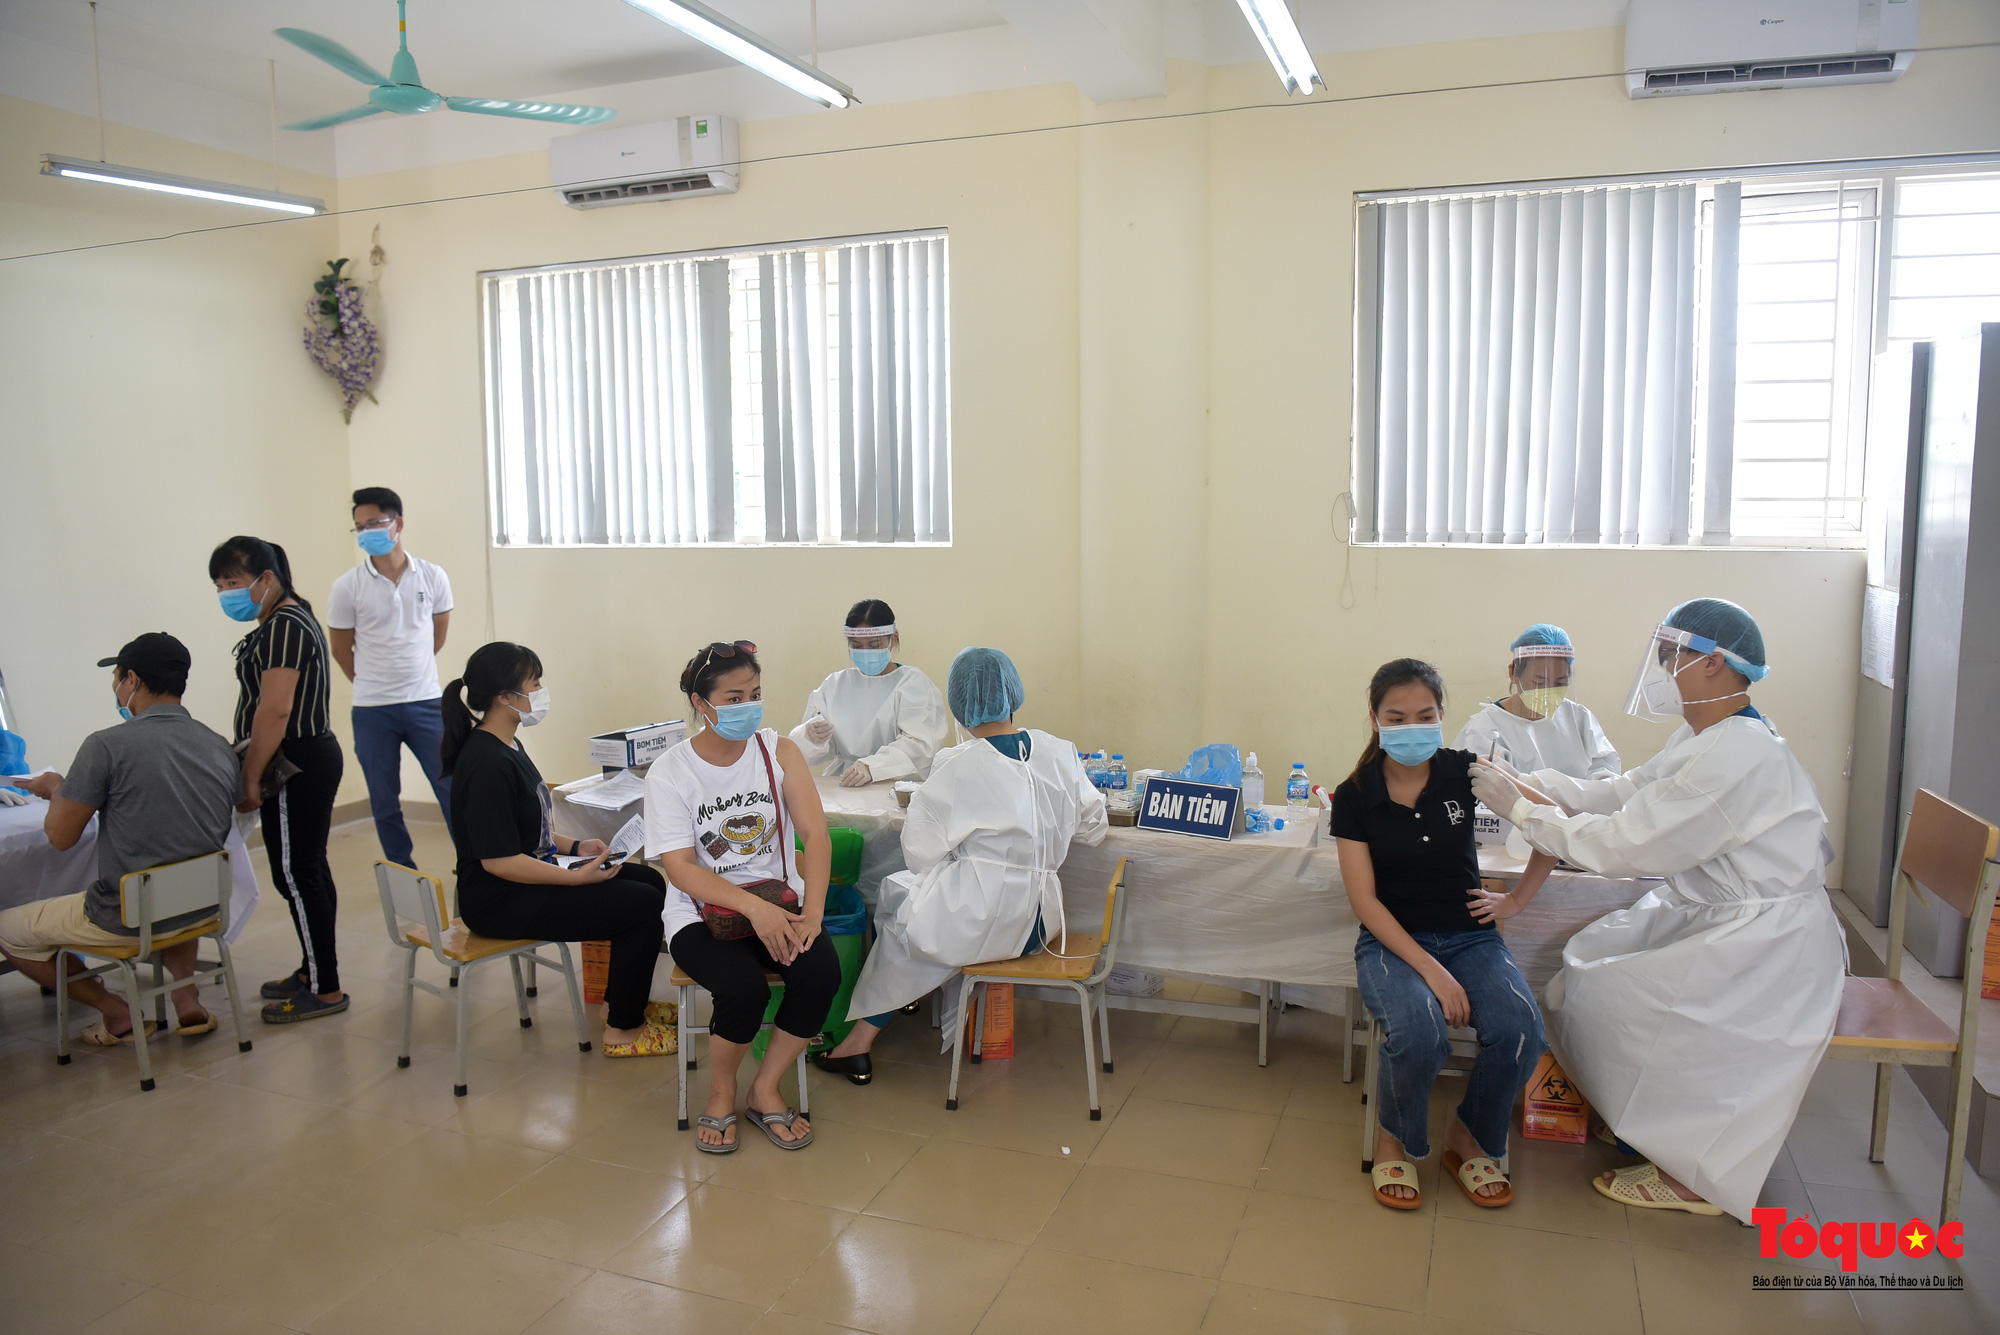 Đoàn y bác sĩ Bắc Giang hỗ trợ tiêm vaccine Vero Cell tại Hà Nội - Ảnh 6.